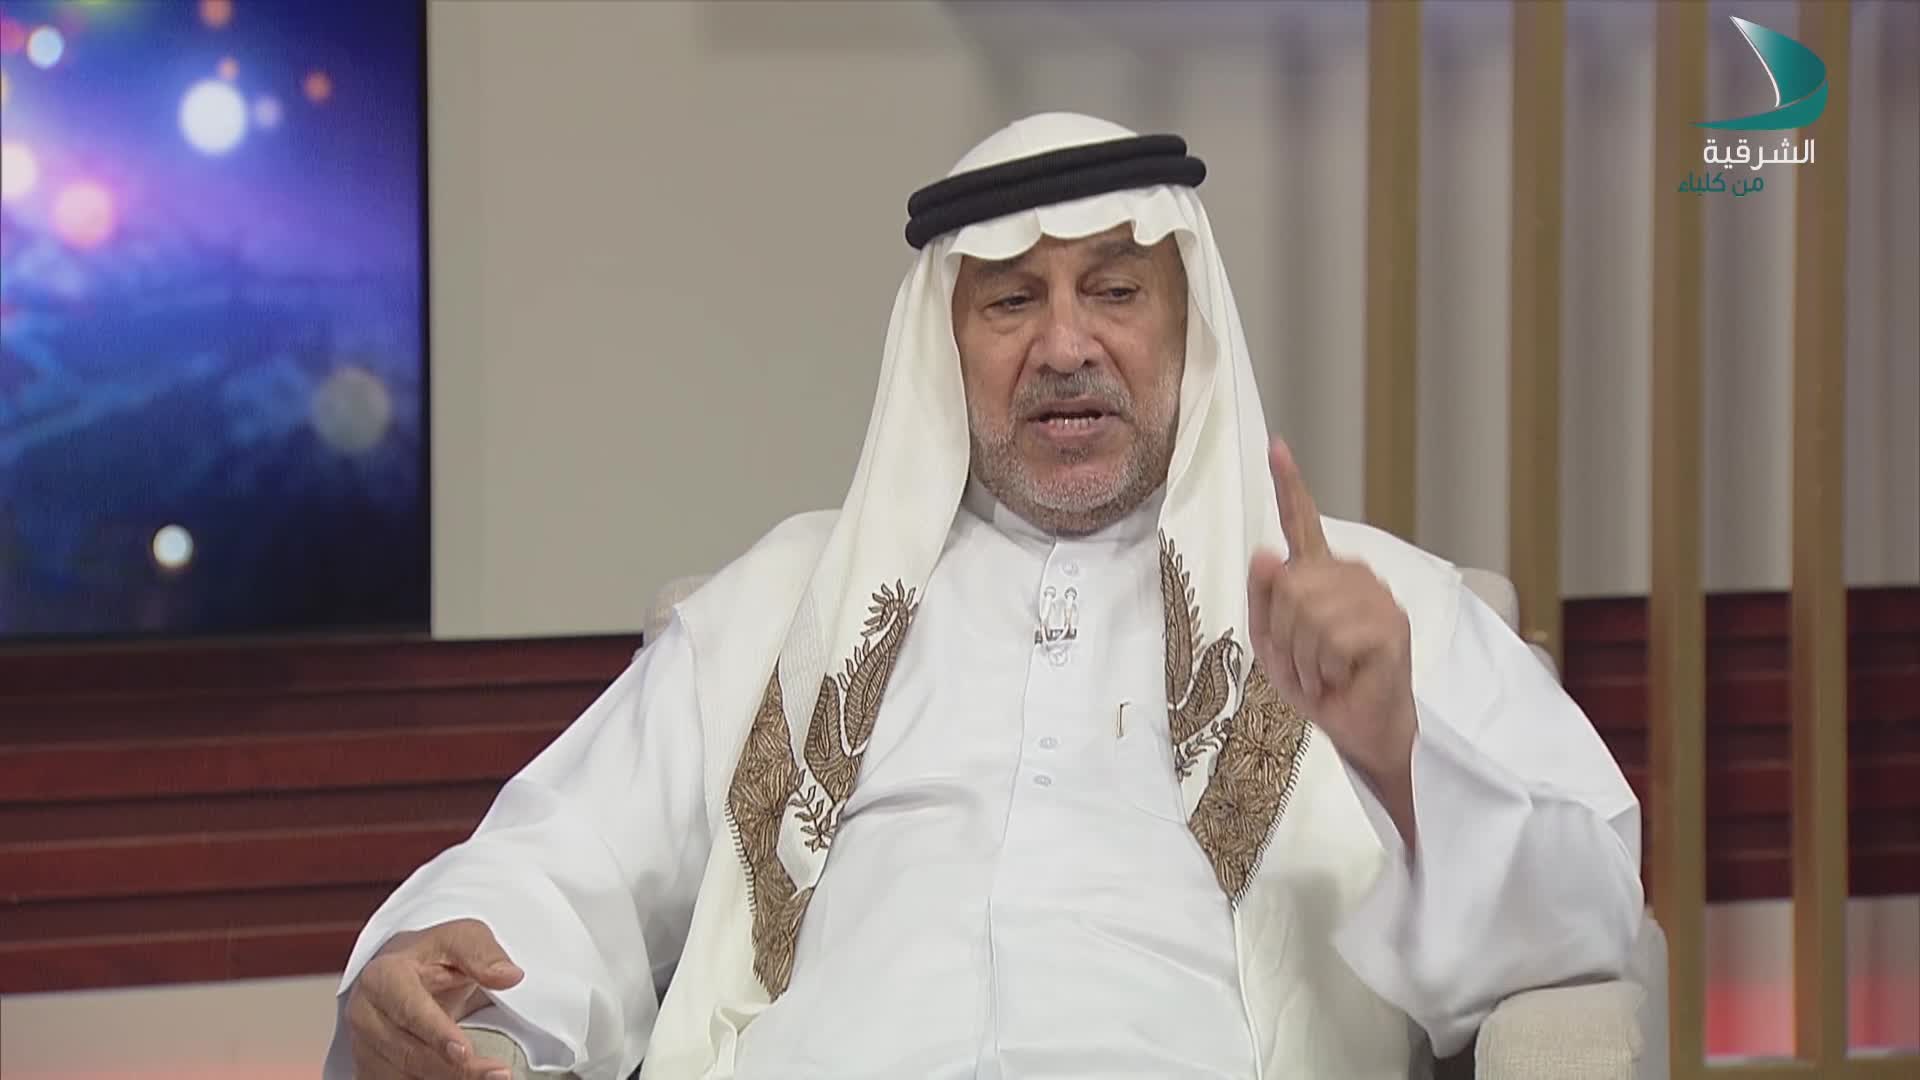 حديث المساء - الوالد محمد عبدالرحمن صالح - من أهالي مدينة دبا الحصن